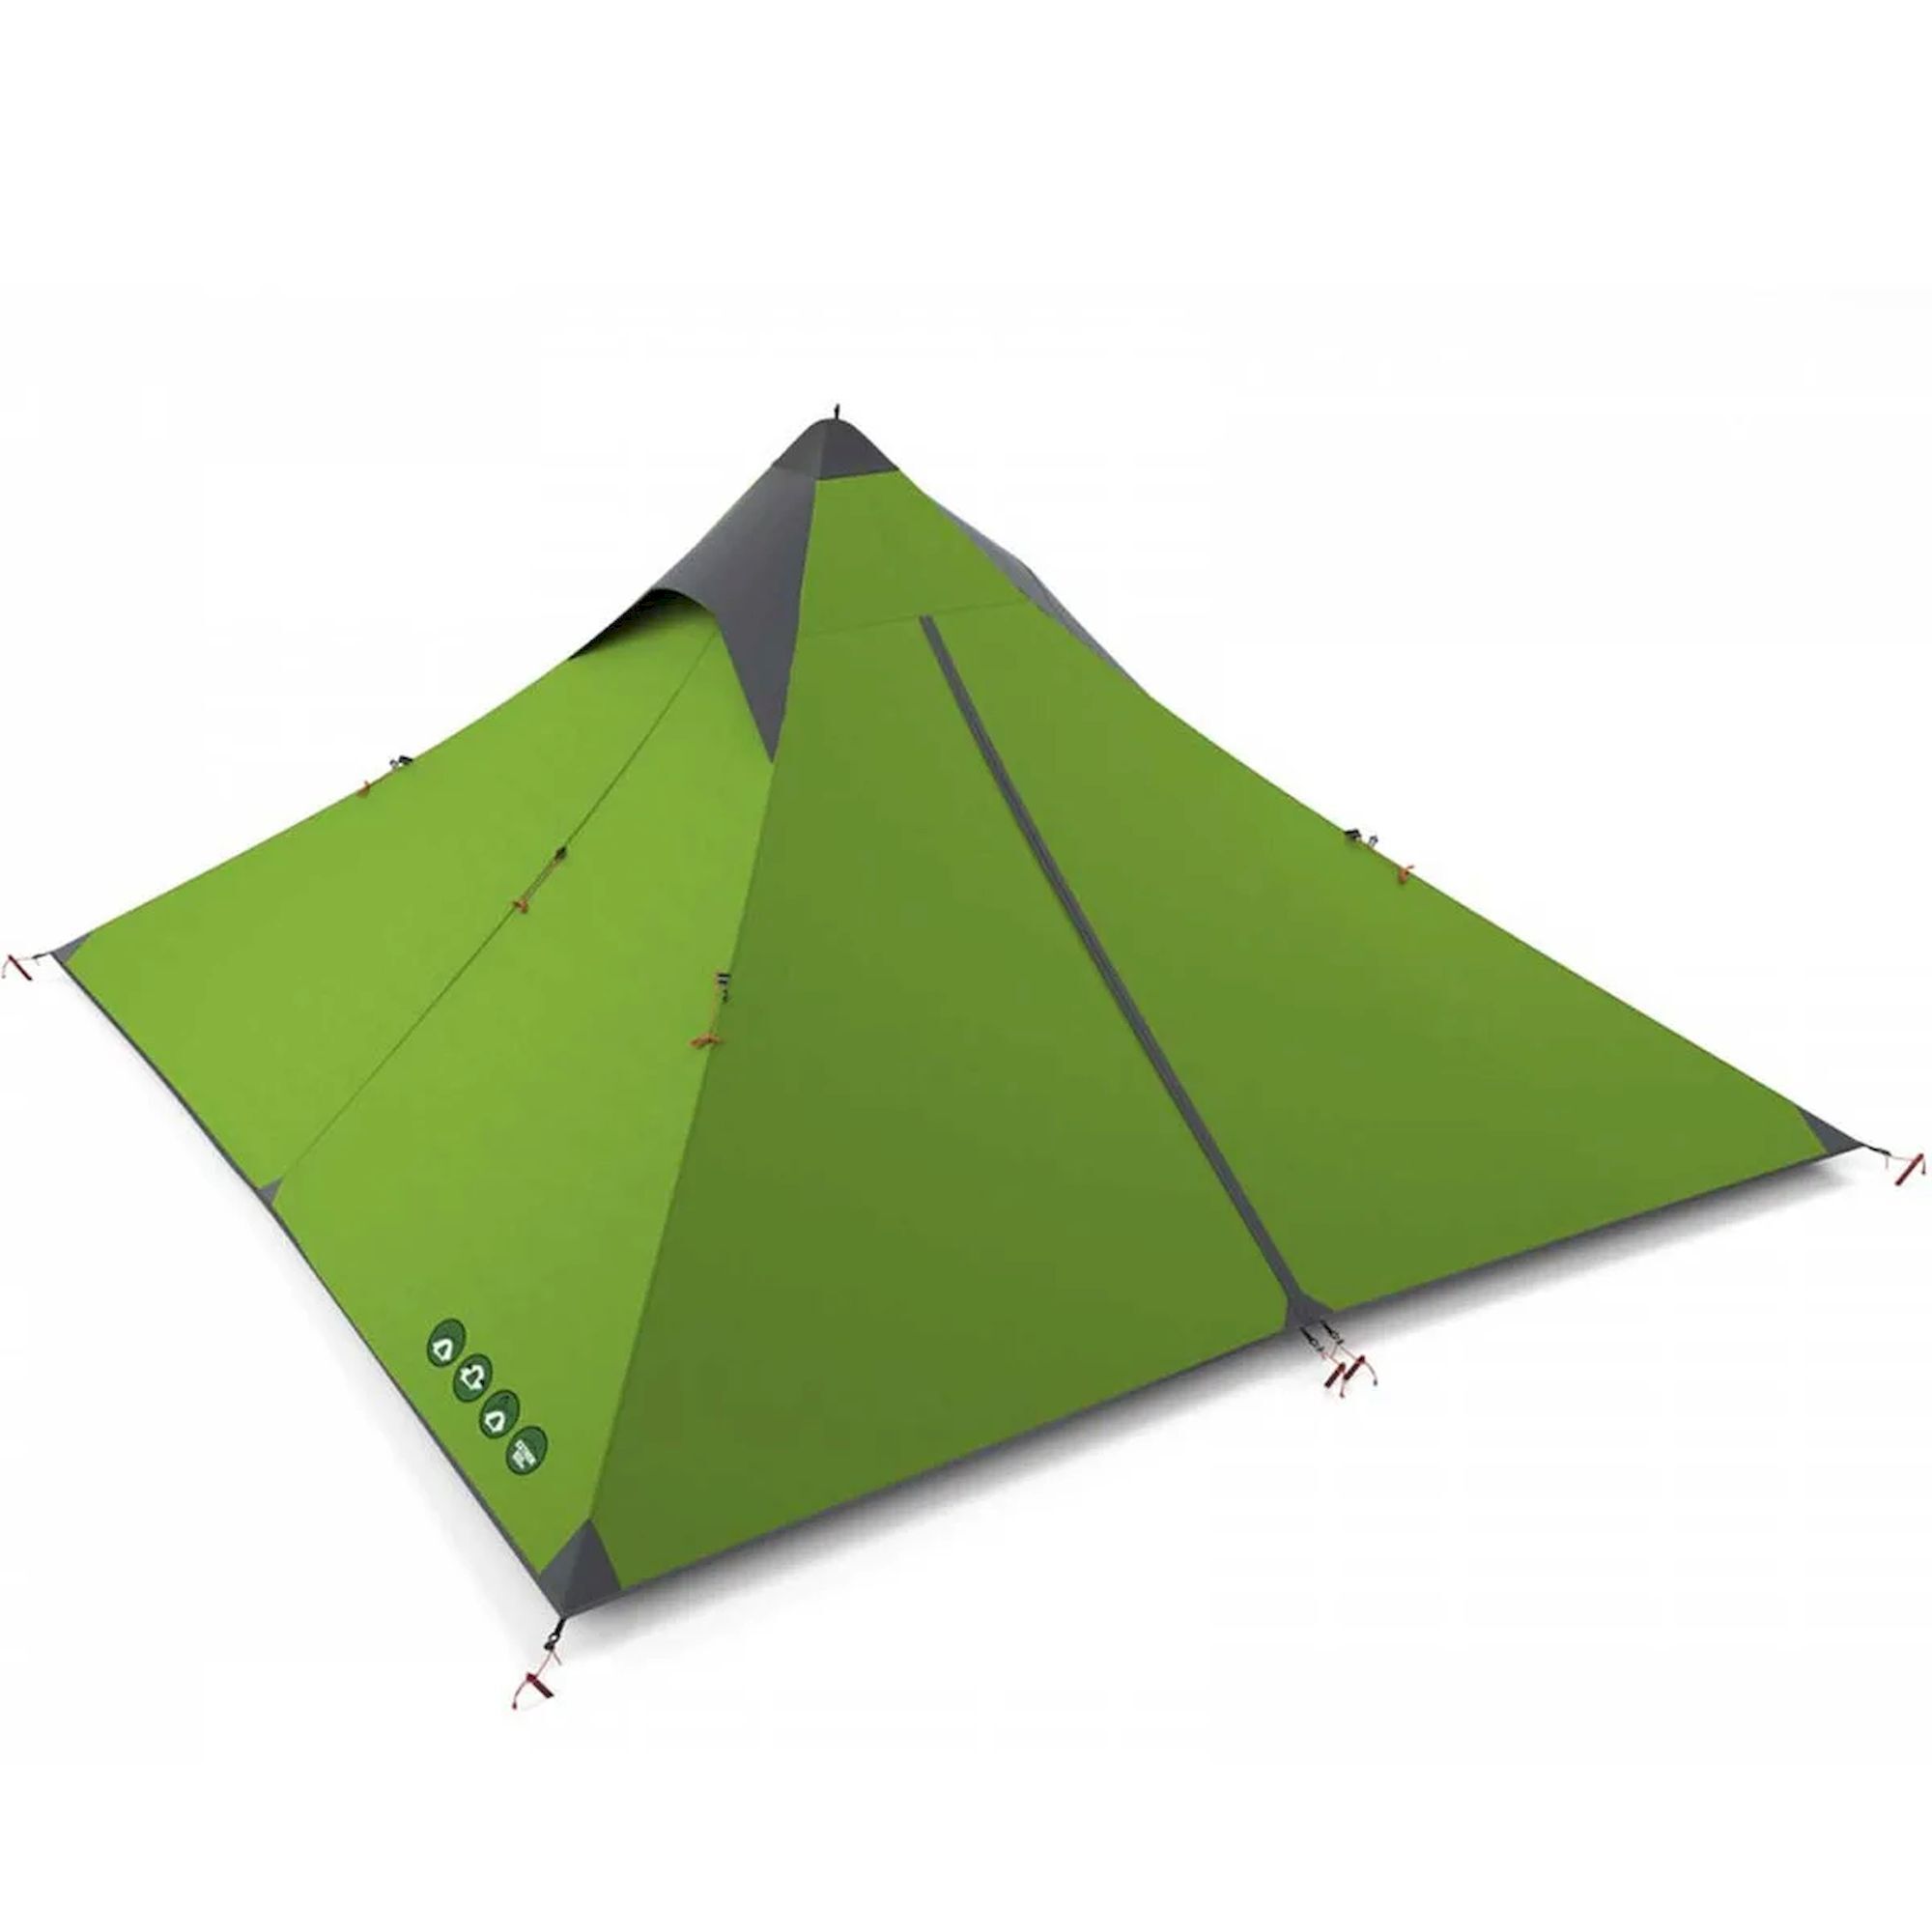 Husky Sawaj Trek 3 - Tenda da campeggio | Hardloop